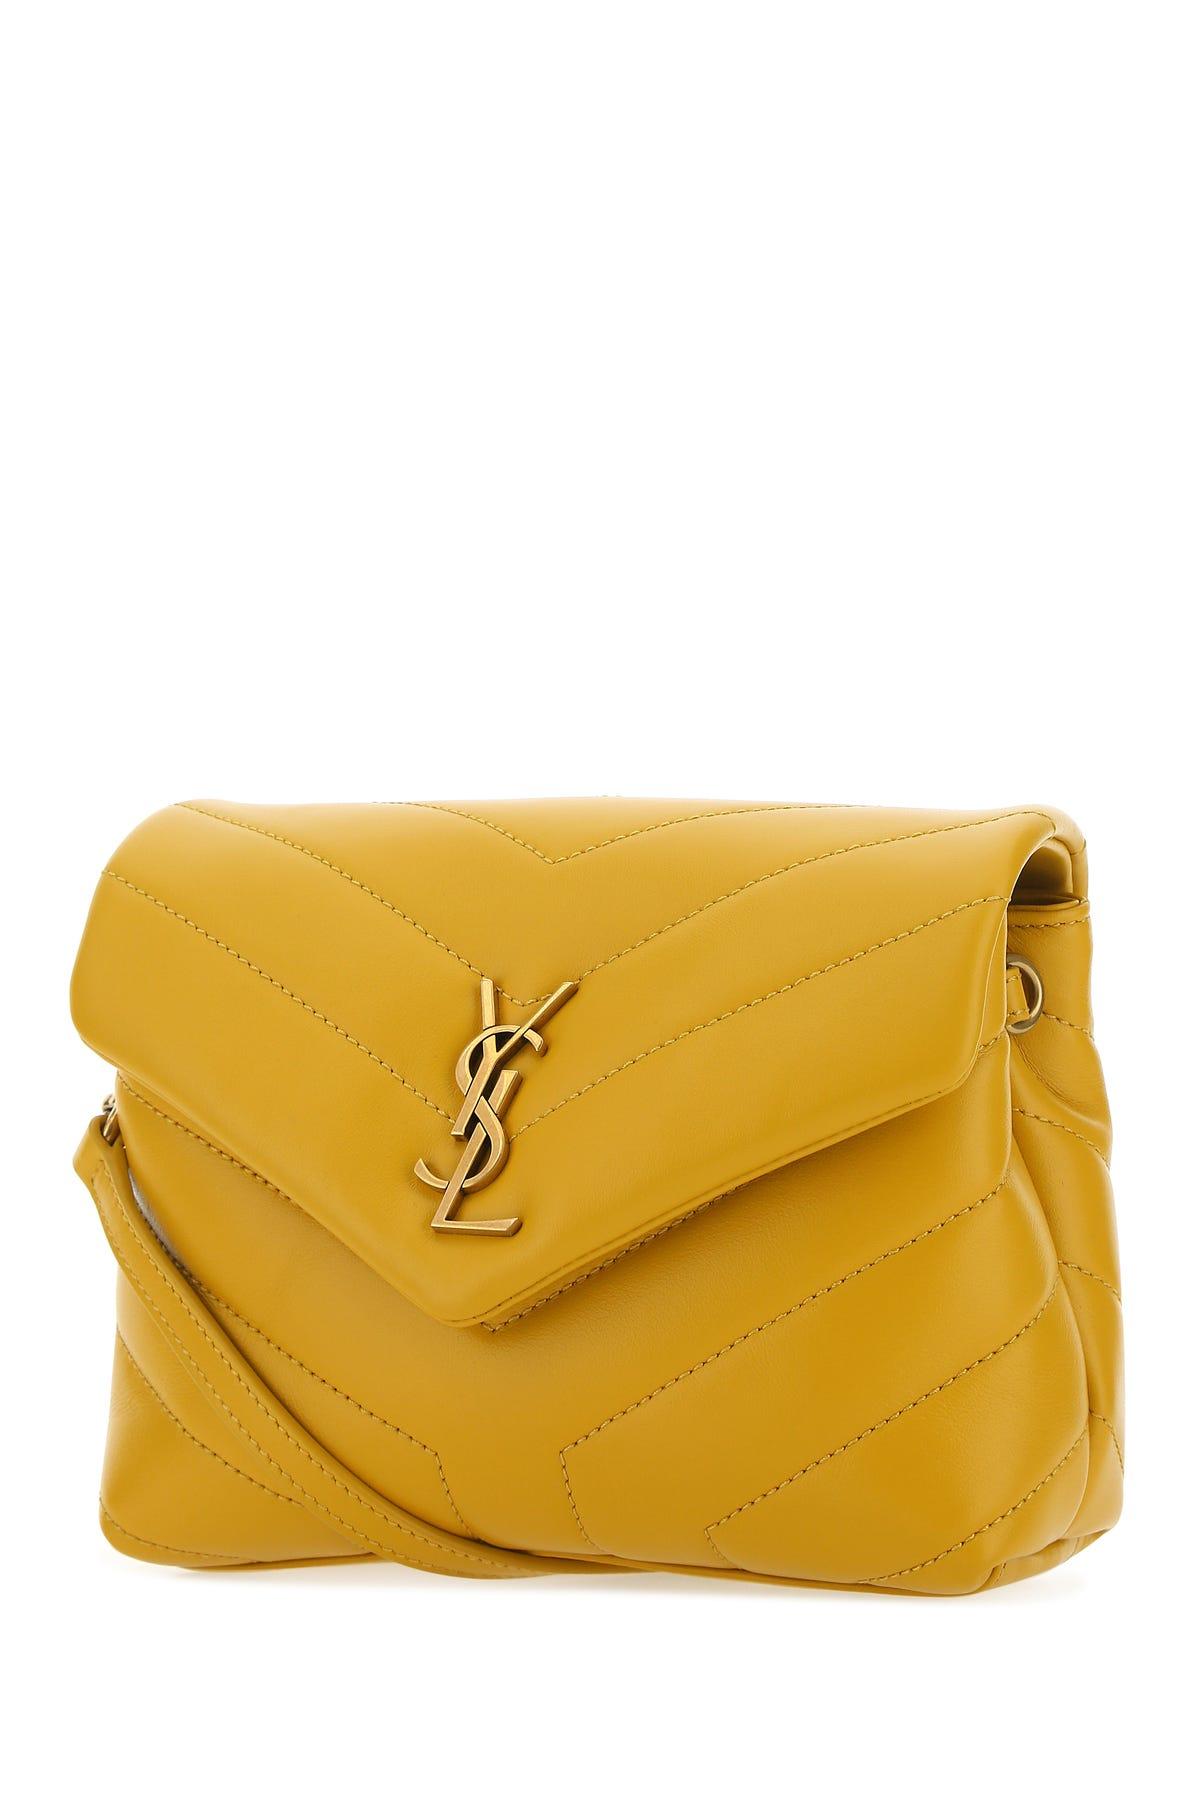 Saint Laurent 'Loulou Toy' shoulder bag, Women's Bags